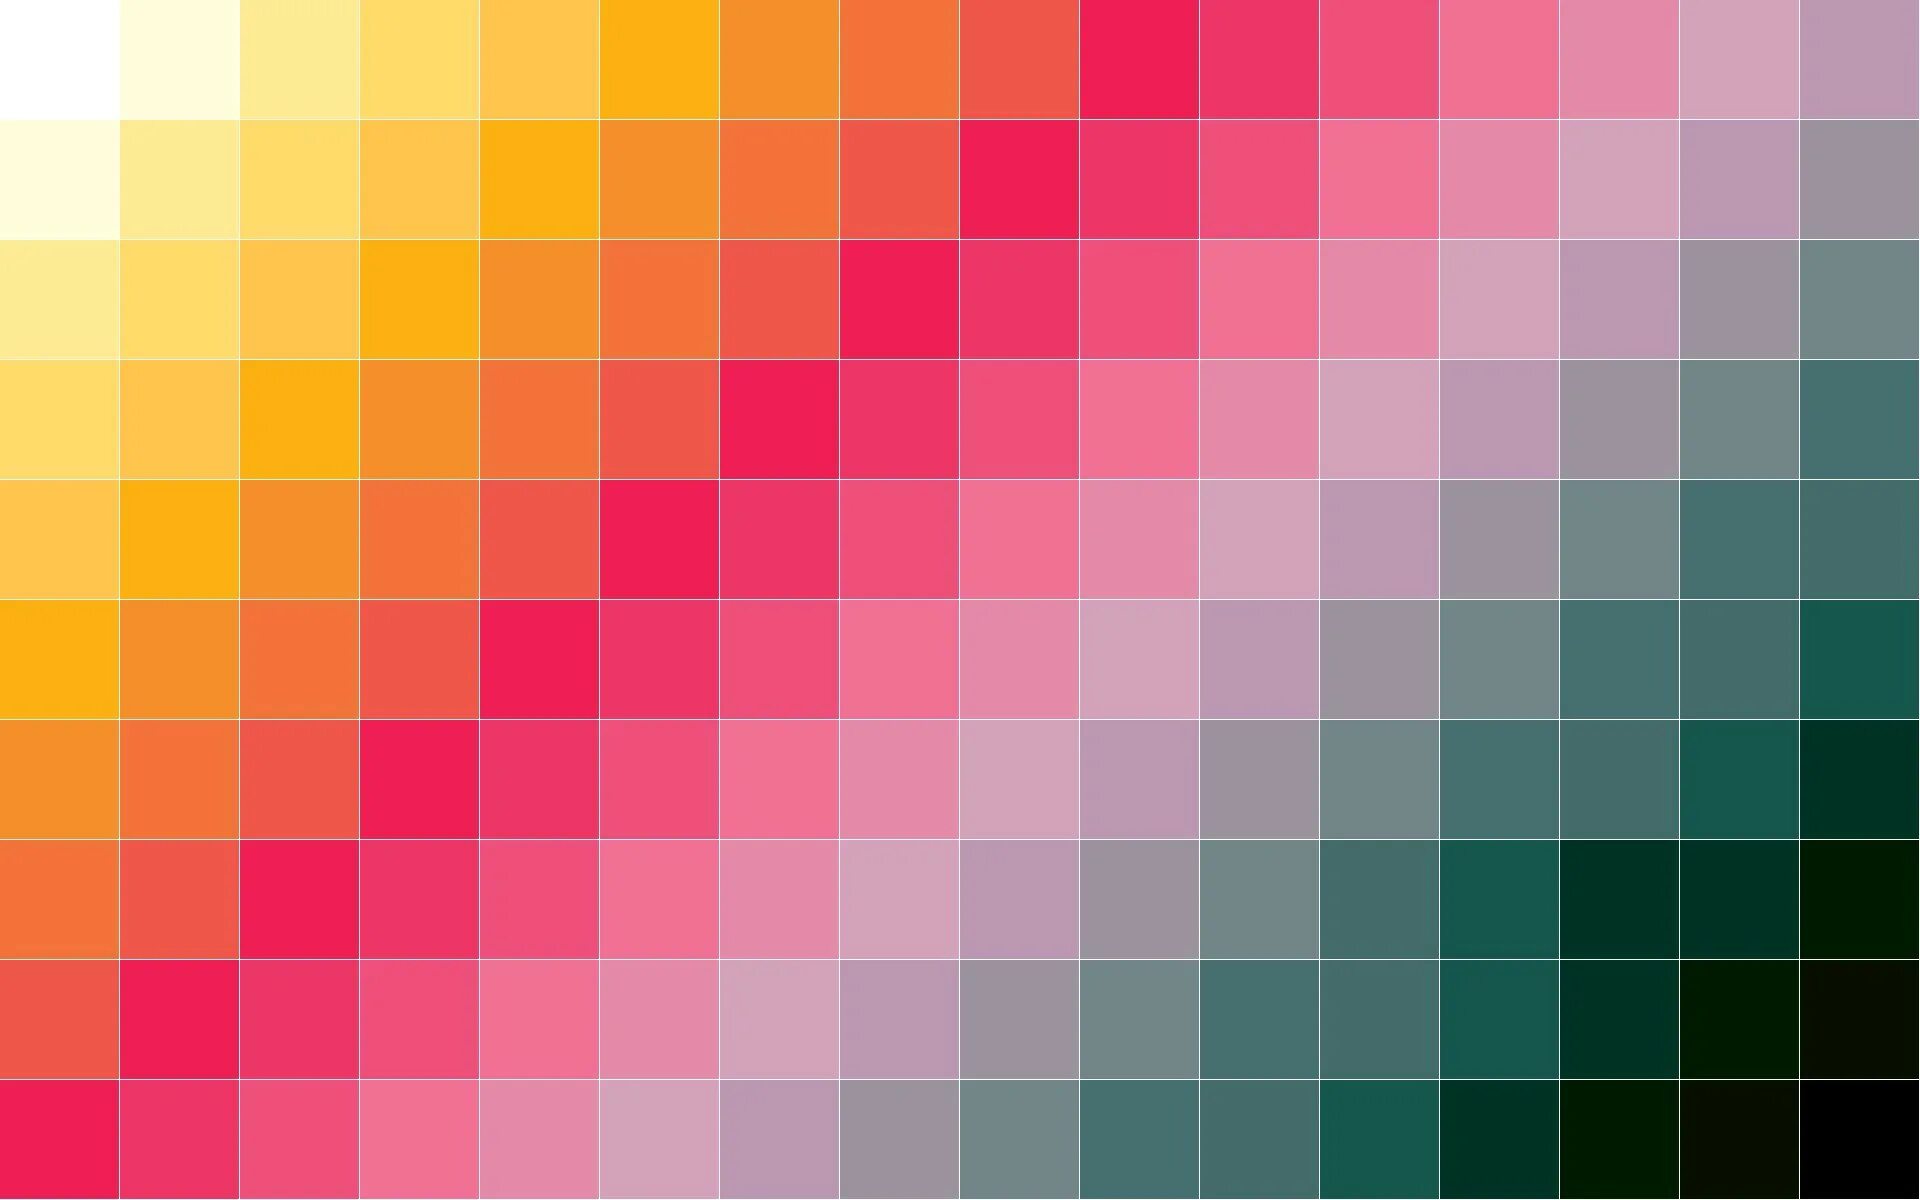 Текстура два цвета. Цветные квадраты. Разноцветные квадратики. Градиент цвета. Цветной фон.